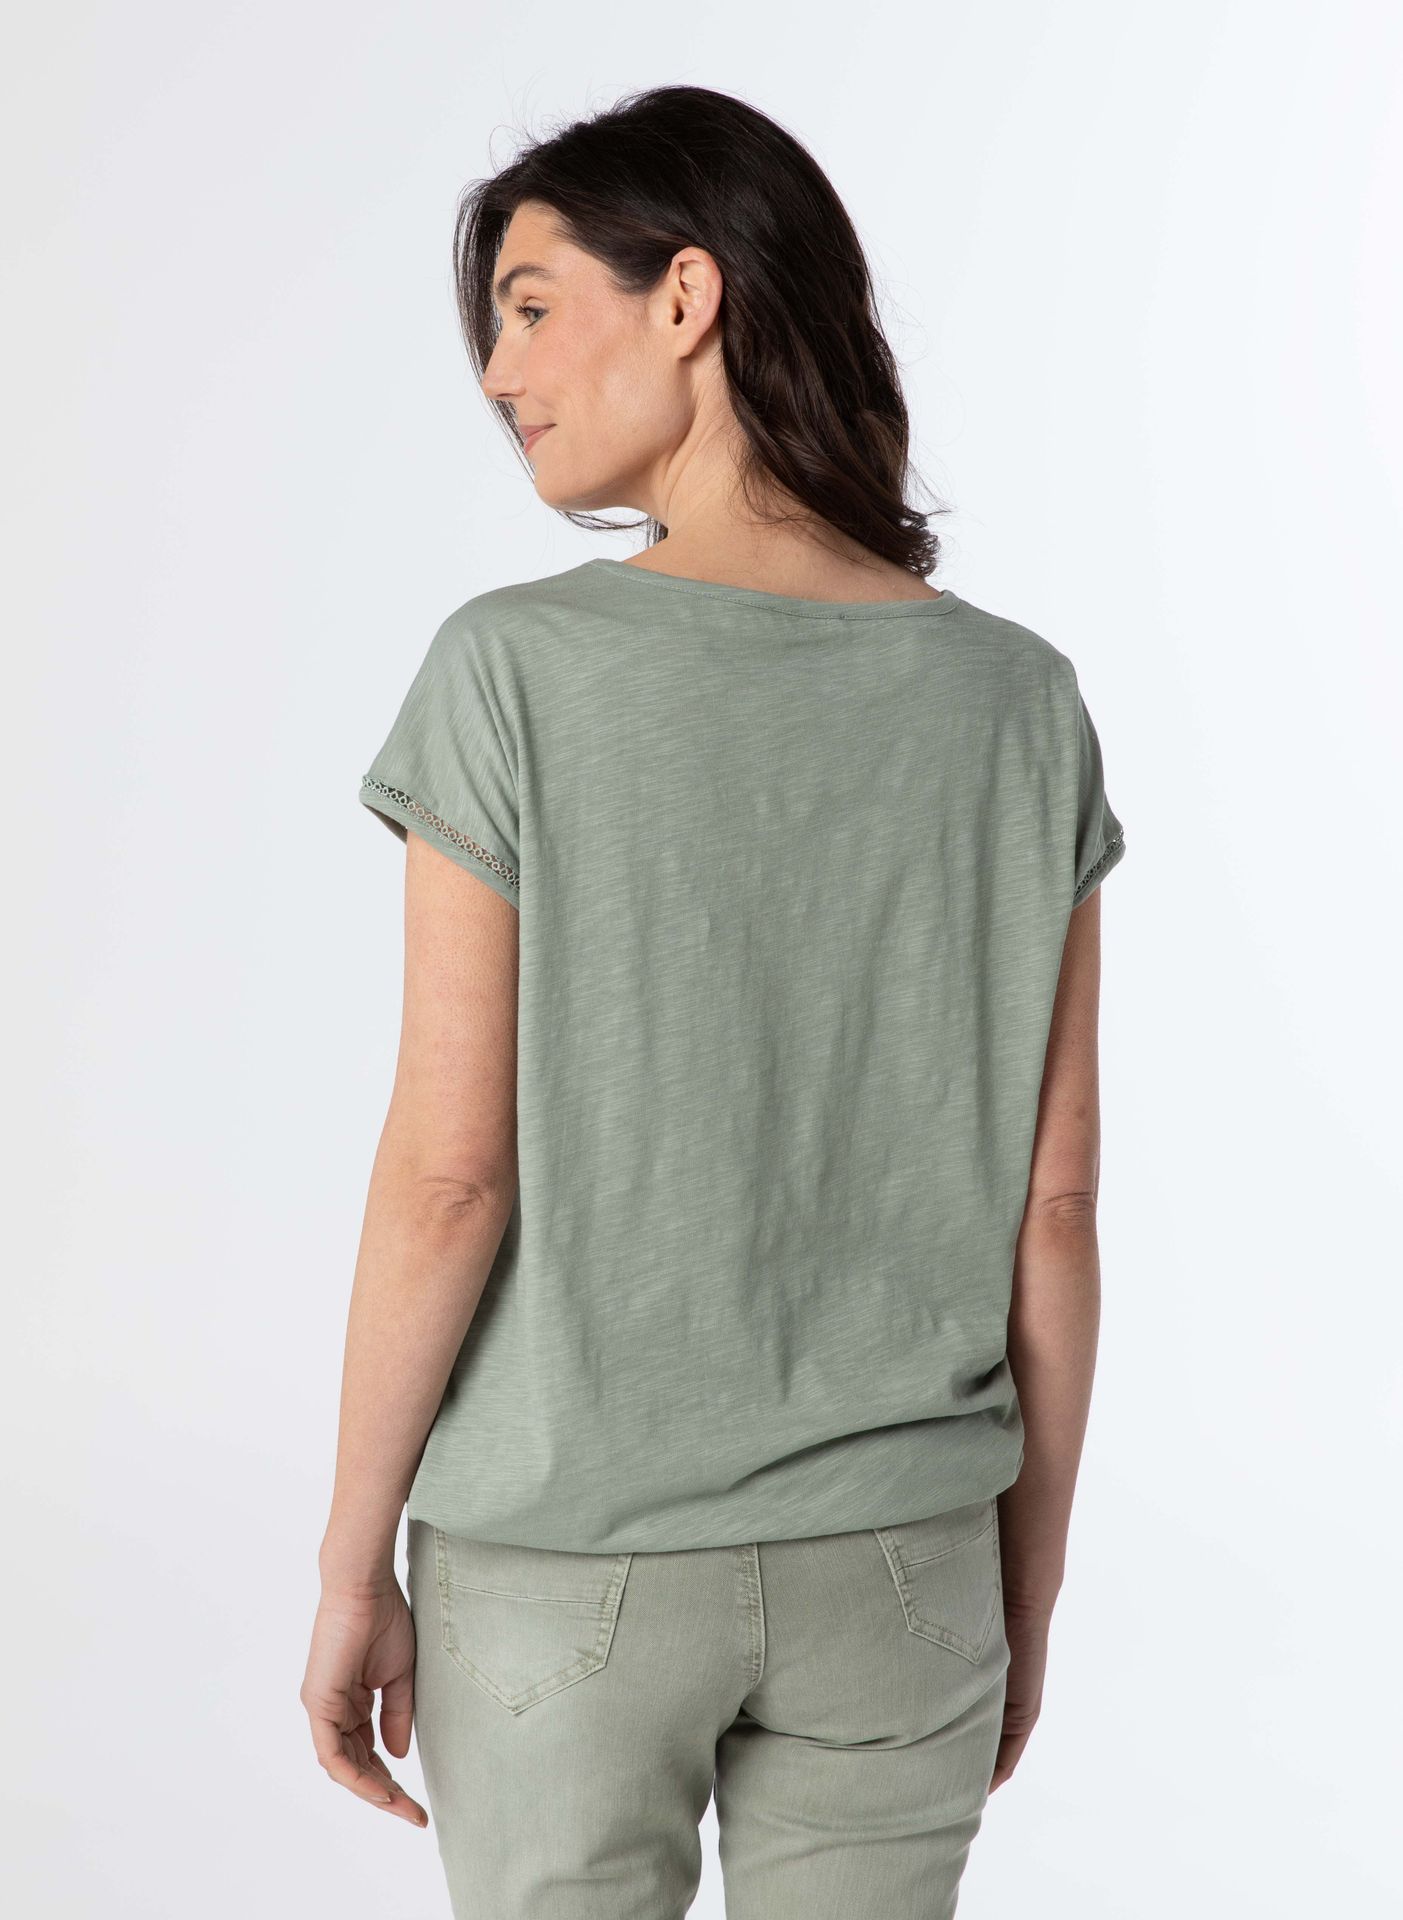 Norah Shirt grijs groen grey green 209485-053